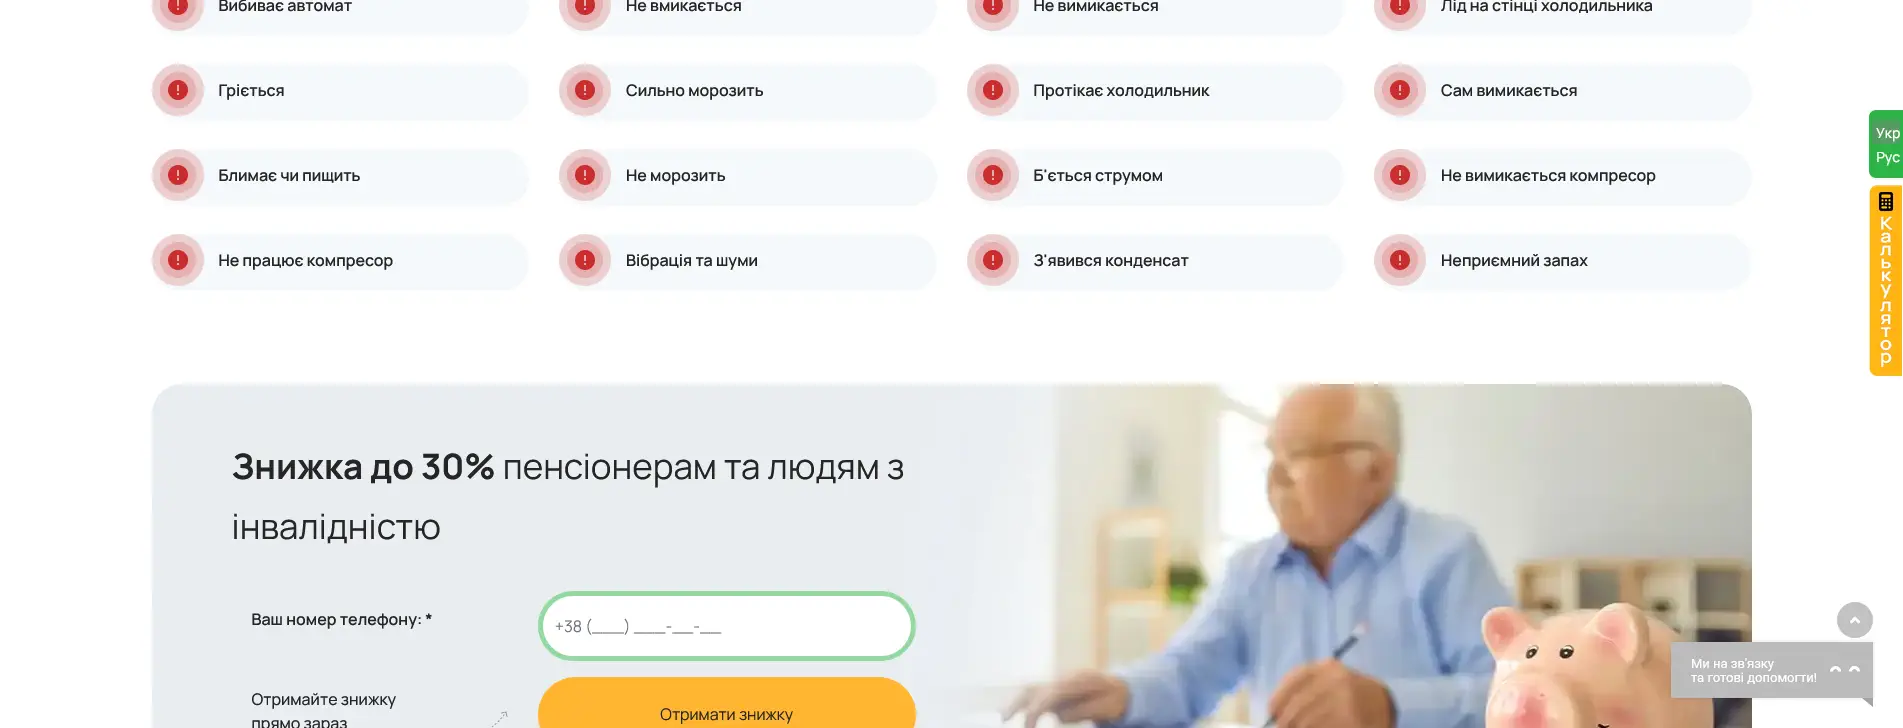 Создание сайта Ремонт холодильников в Киеве remont-holodilnika.com